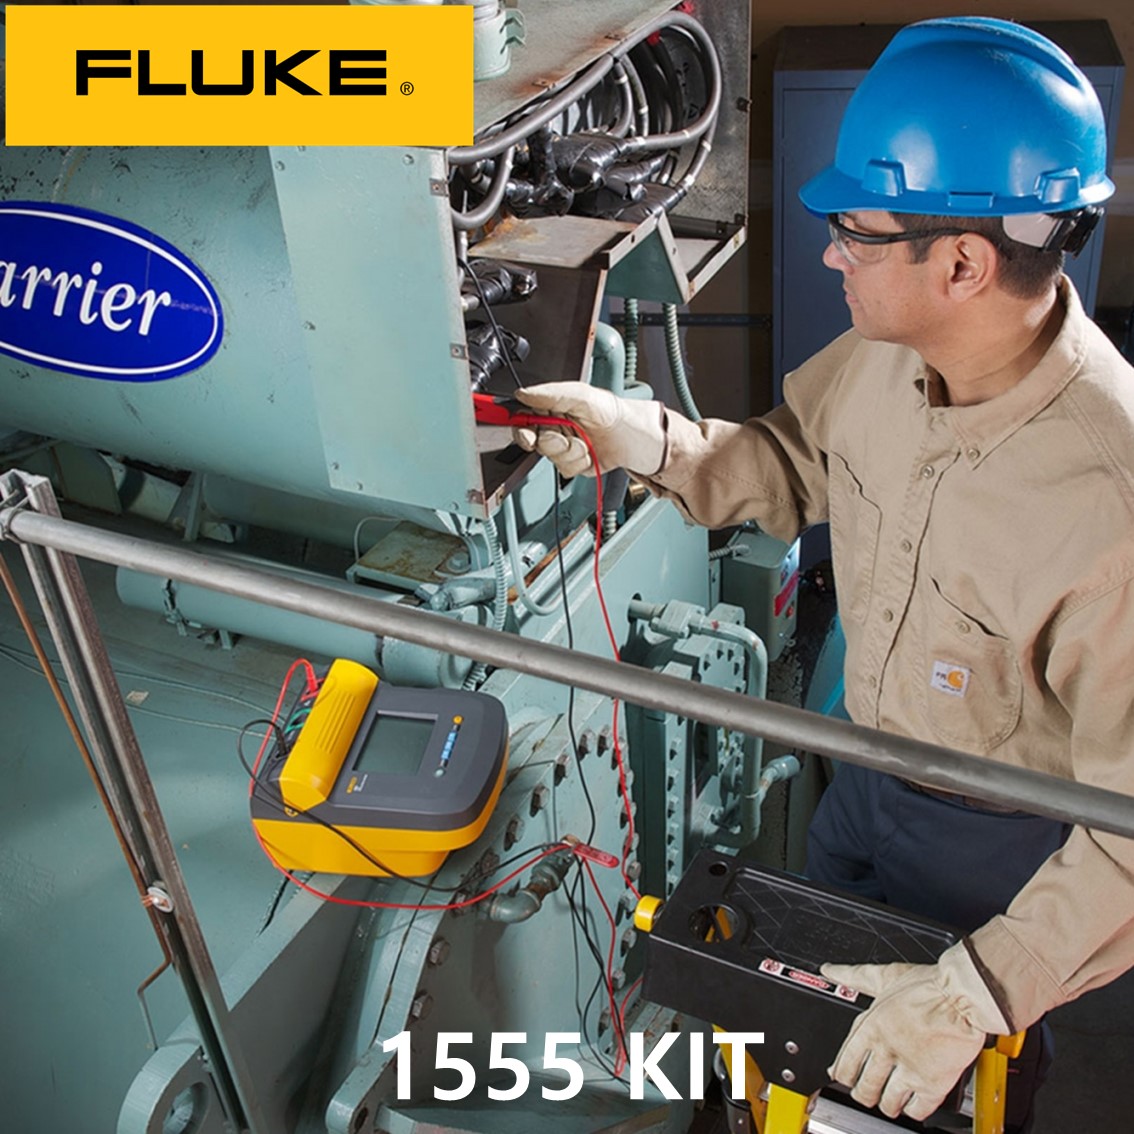 [ FLUKE 1555 KIT ] 정품 플루크 절연저항계 1555 KIT (10KV), 절연시험기, 절연저항계 키트